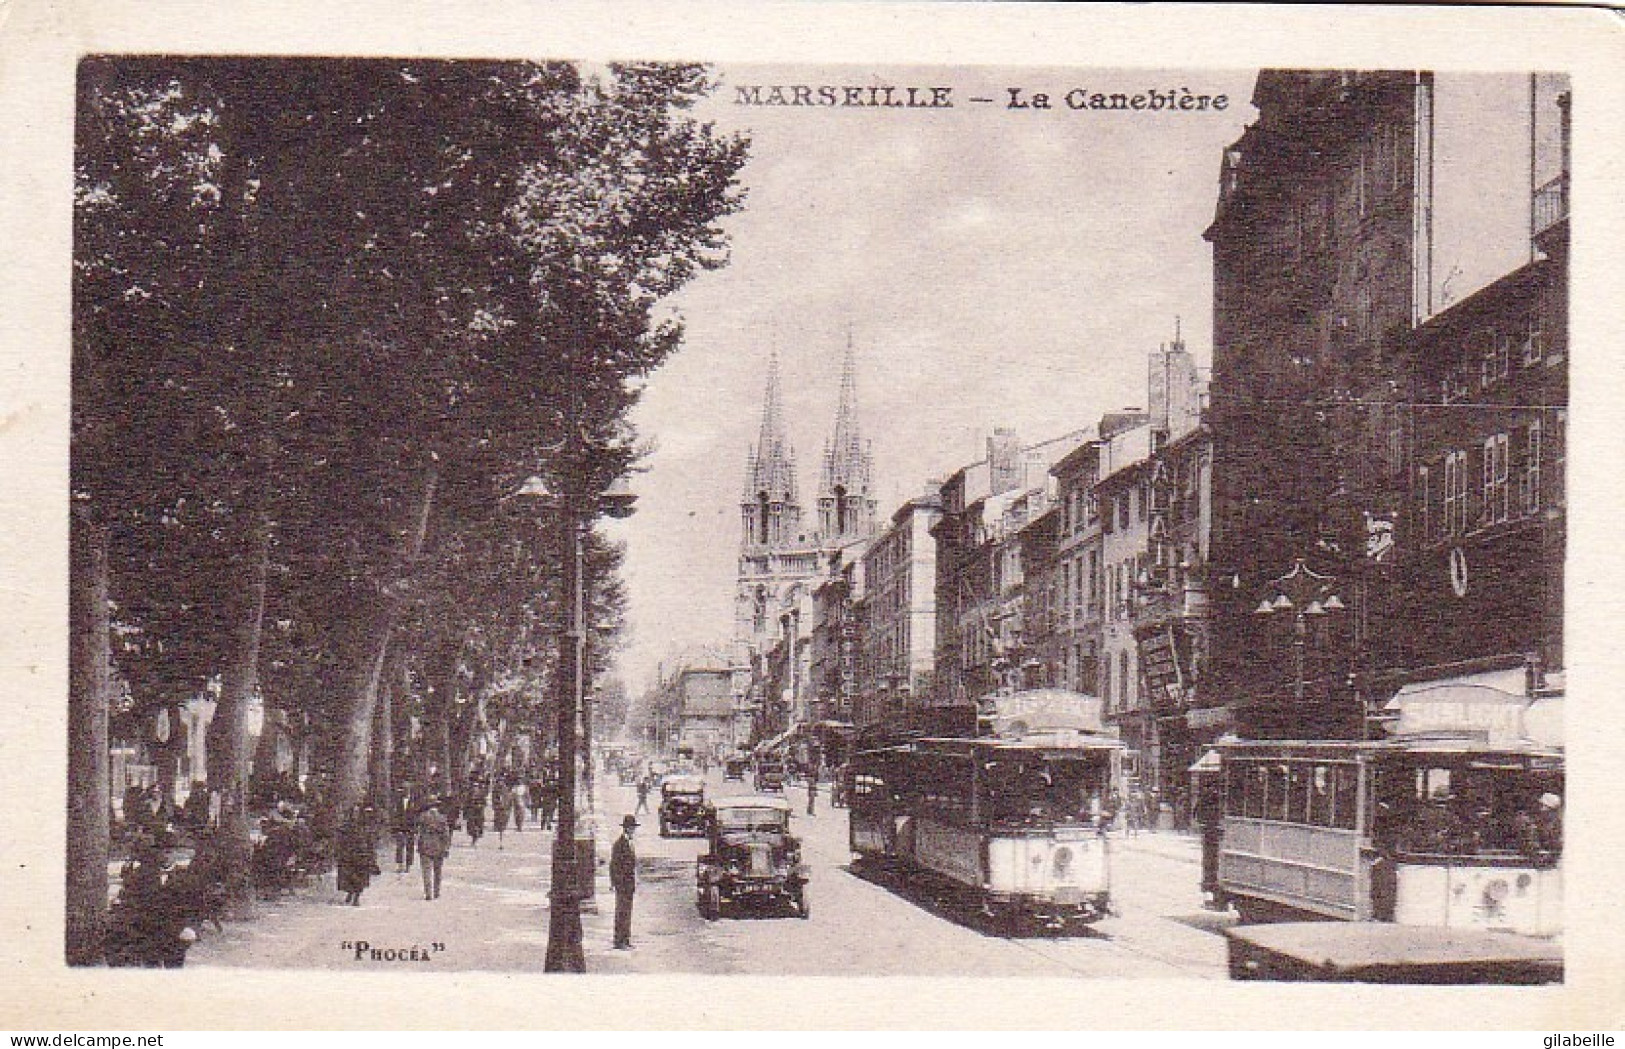 13 - MARSEILLE - La Canebiere - The Canebière, City Centre